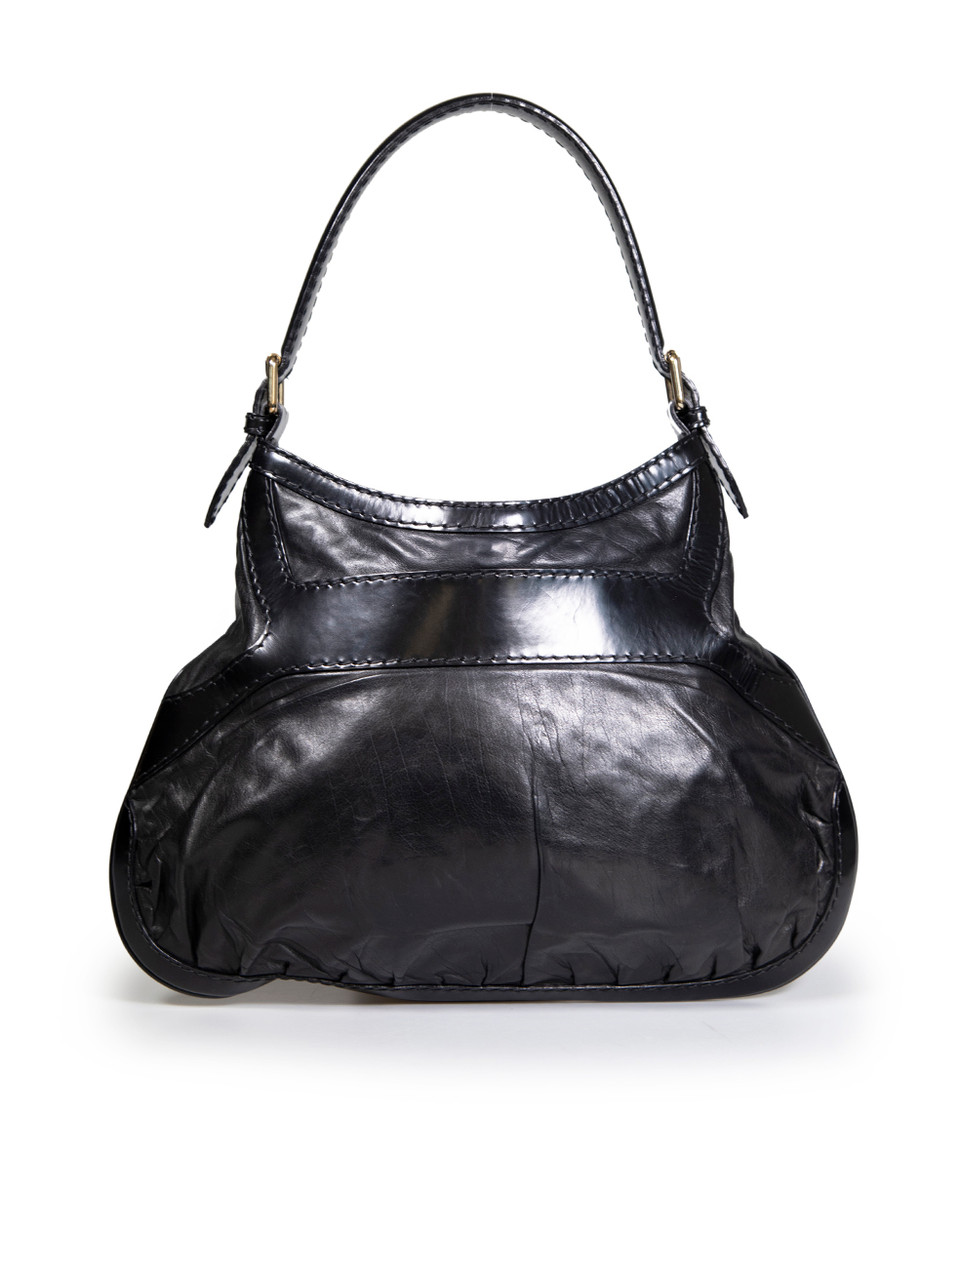 Gucci Black Leather Queen Hobo Shoulder Bag